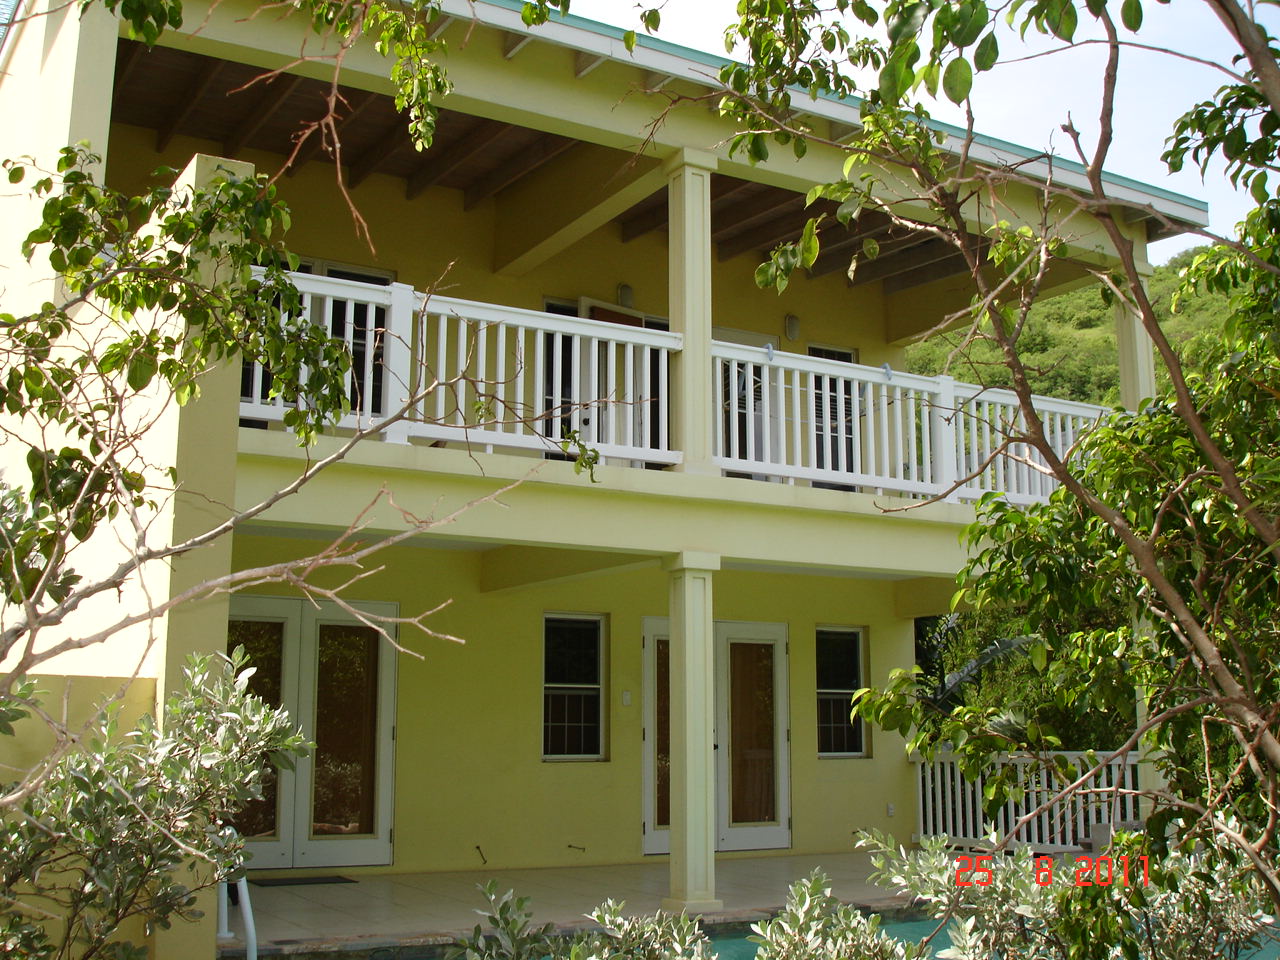 For sale Spacious 1 bedroom villa in Calypso